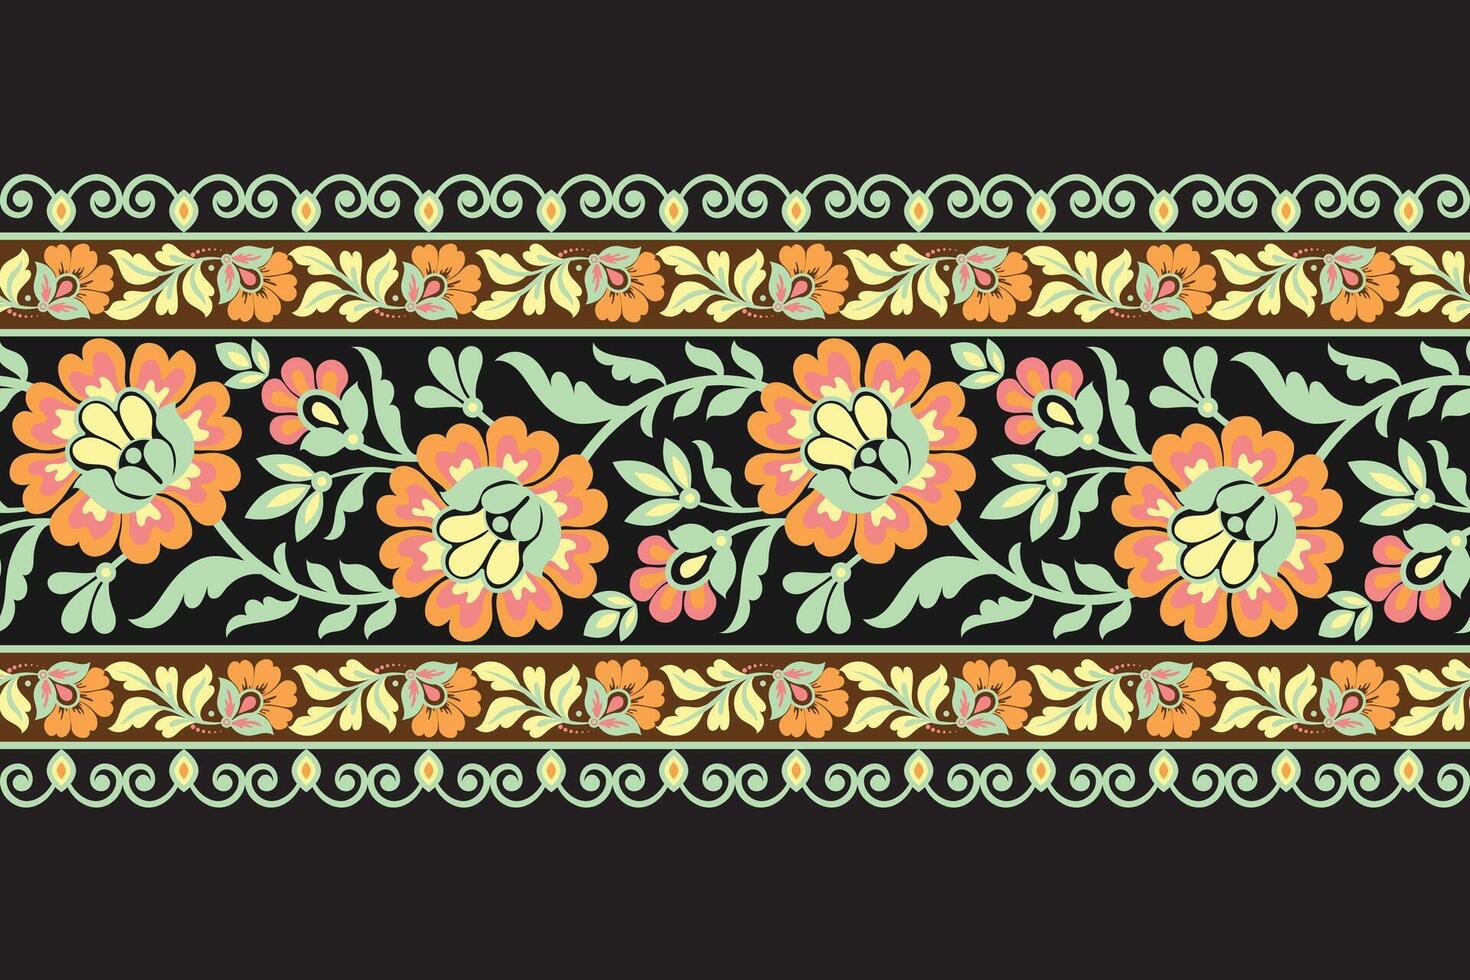 sömlös mönster bakgrund geometrisk etnisk orientalisk ikat sömlös mönster traditionell design för bakgrund, matta, tapet, Kläder, omslag, batik, tyg, illustration broderi. vektor